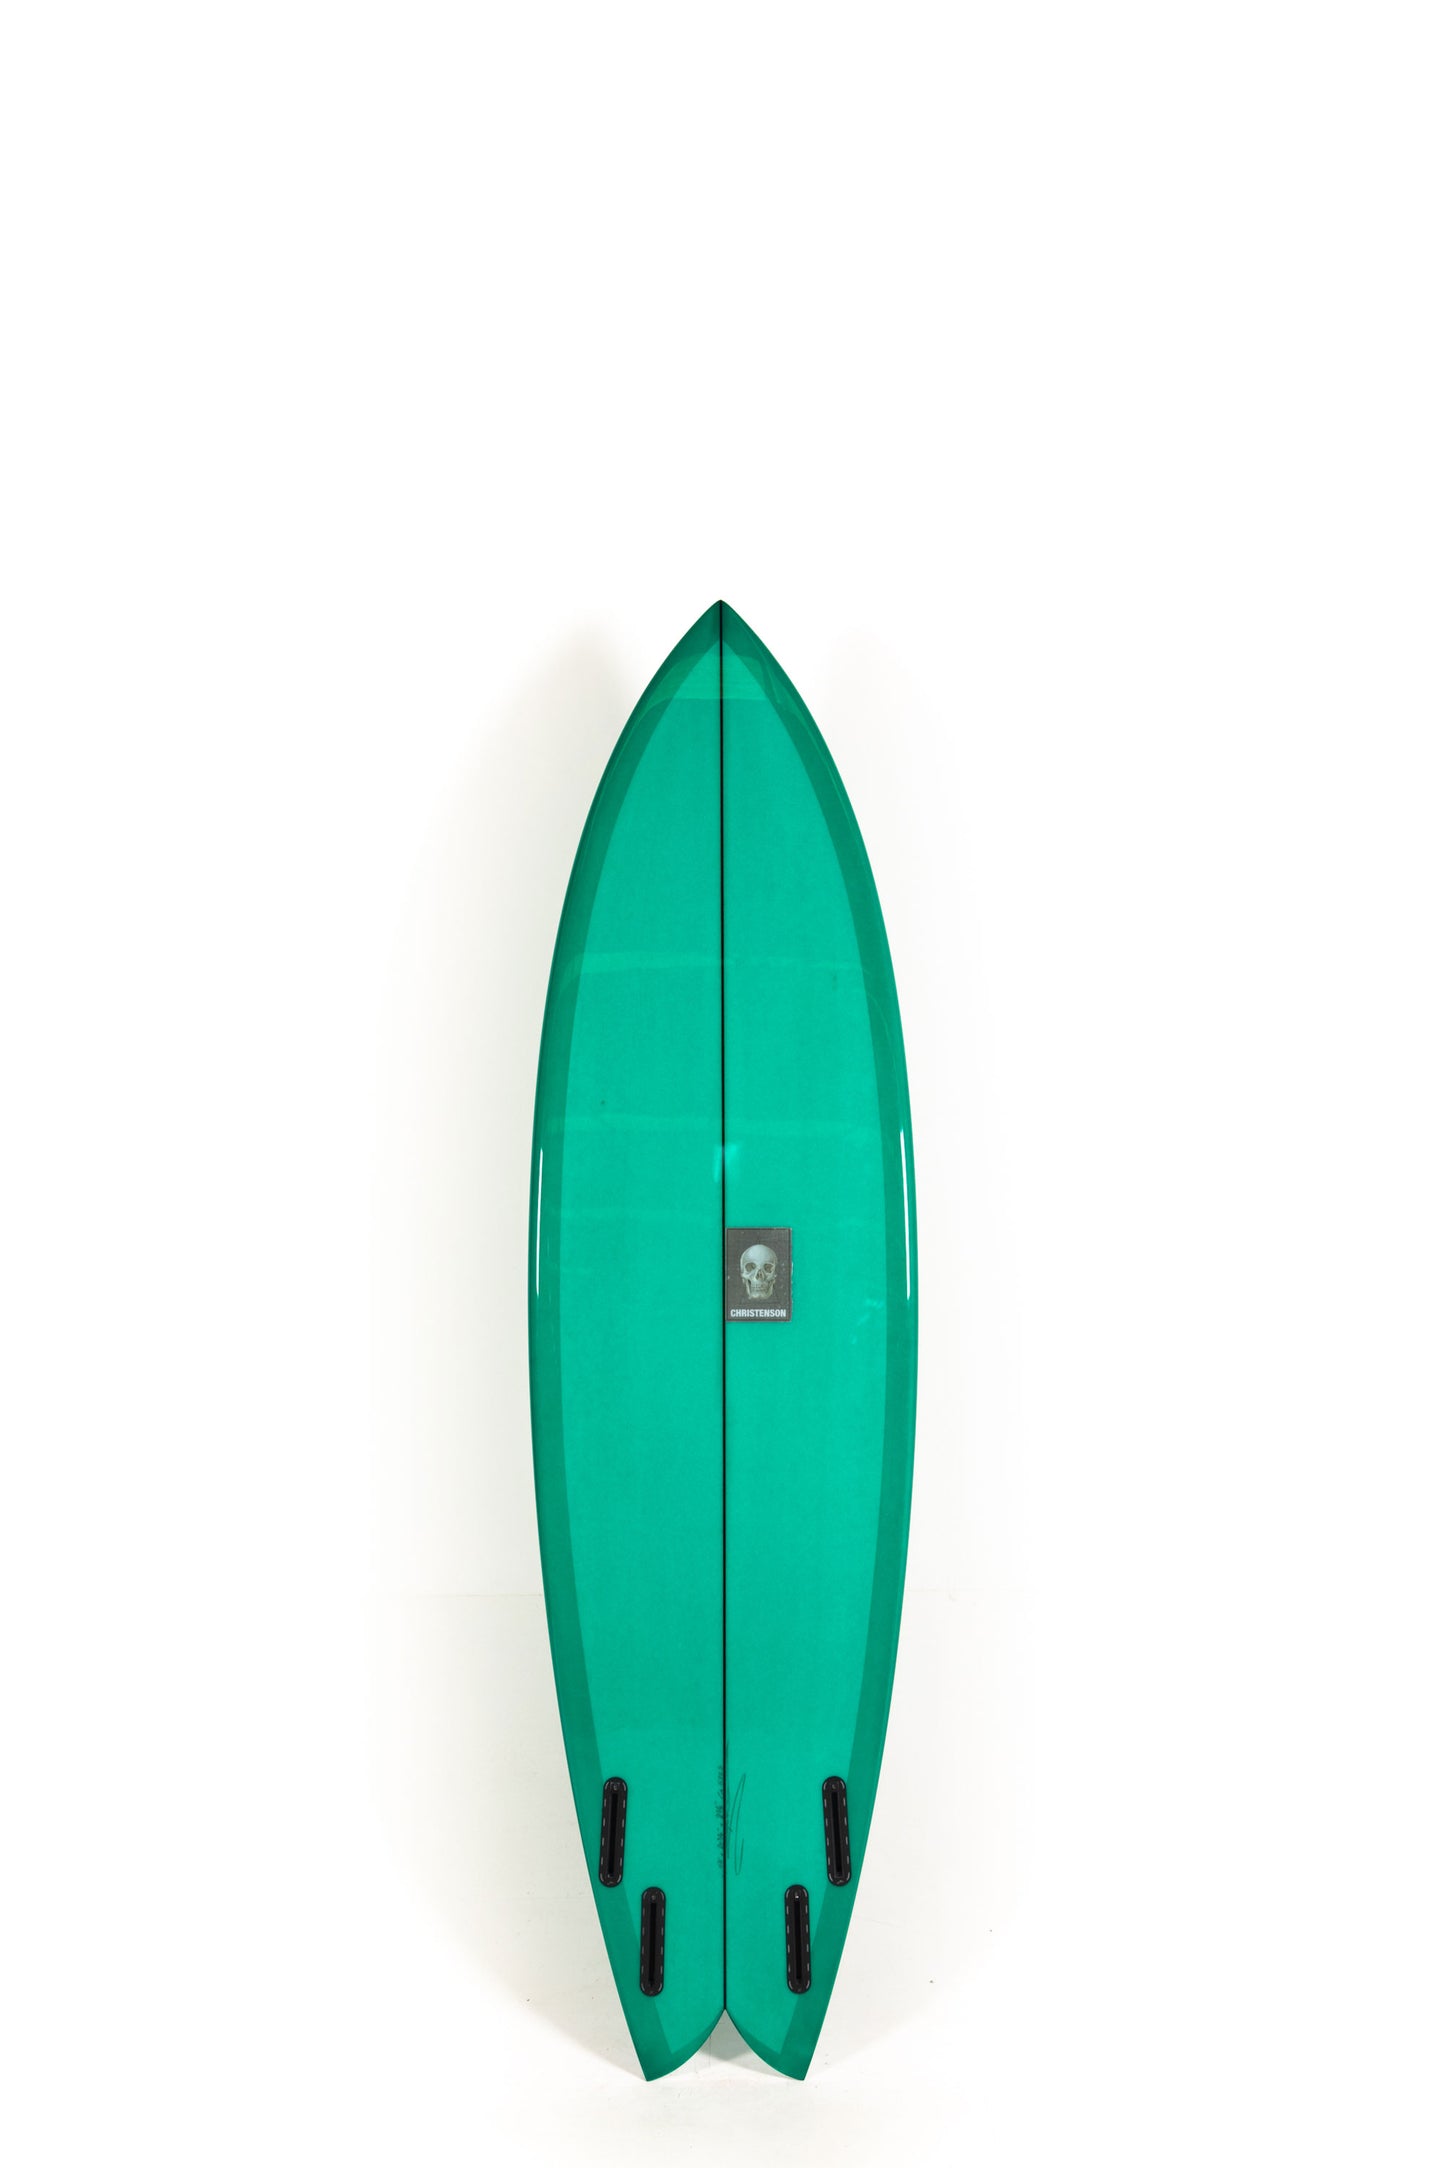 Pukas Surf Shop- Christenson Surfboards - NAUTILUS - 6'8" x 20 3/4 x 2 5/8 - CX05723